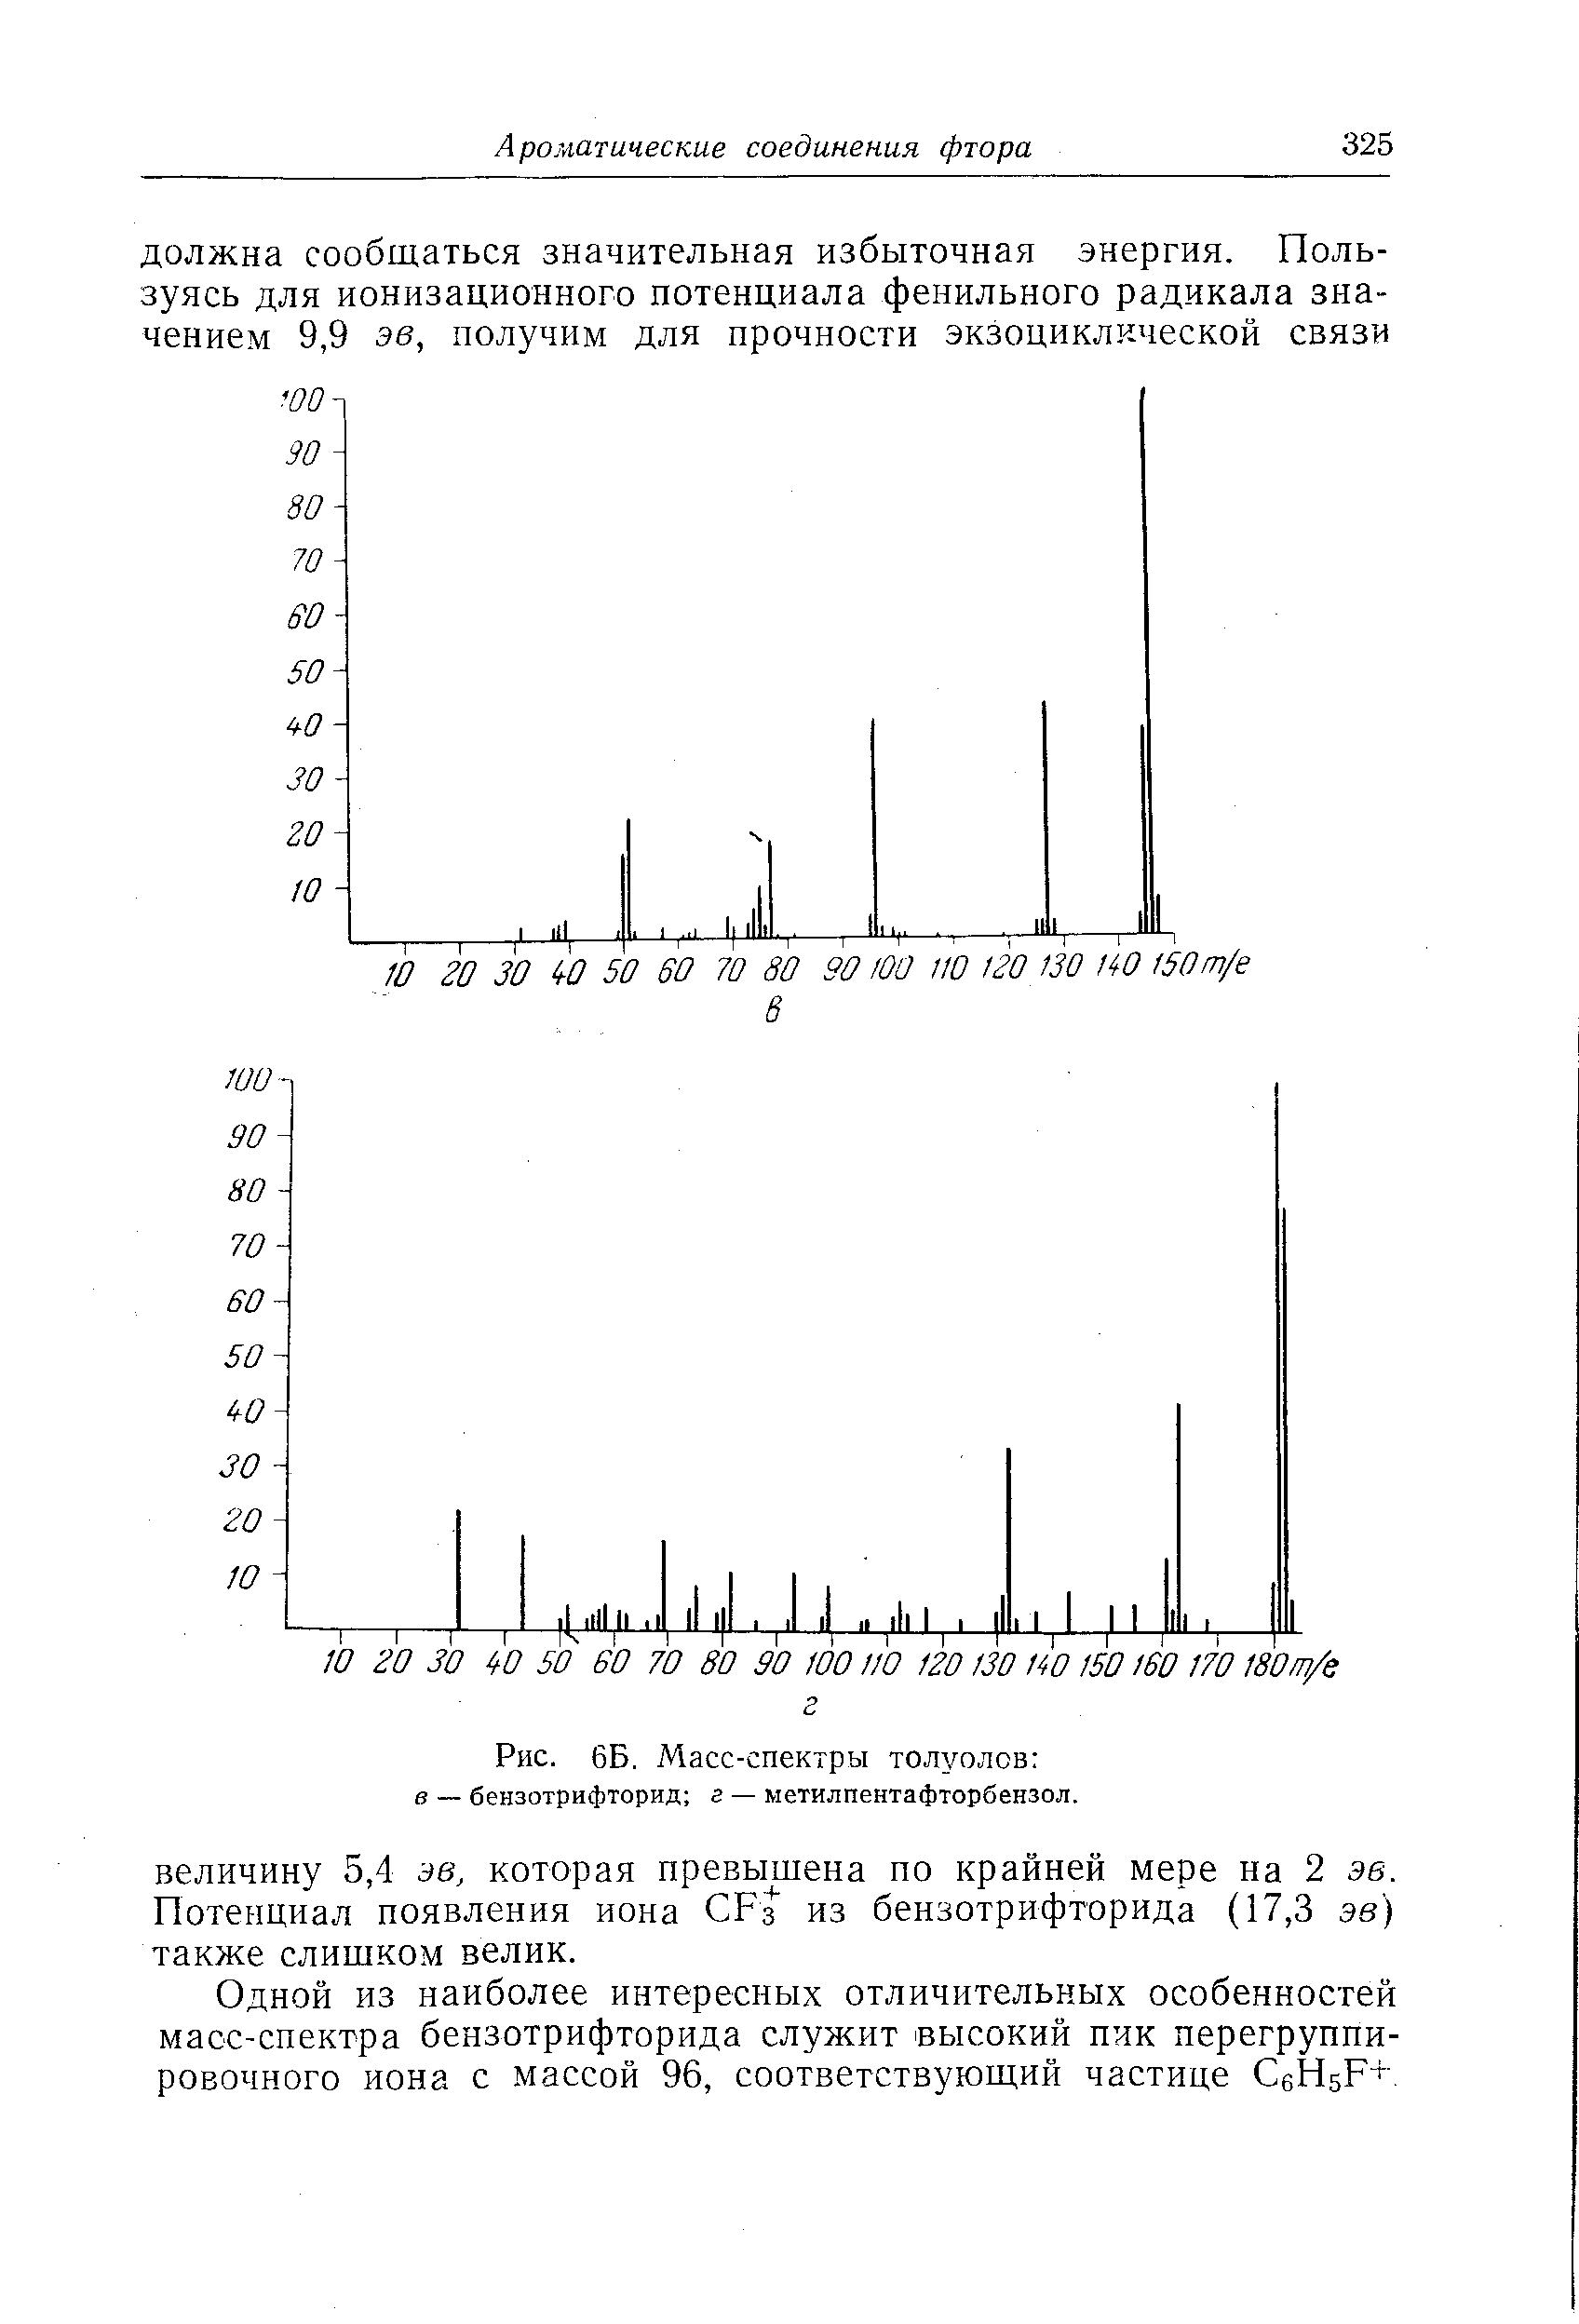 Одной из наиболее интересных отличительных особенностей масс-спектра бензотрифторида служит высокий пик перегруппи-ровочного иона с массой 96, соответствующий частице СеН5р+.